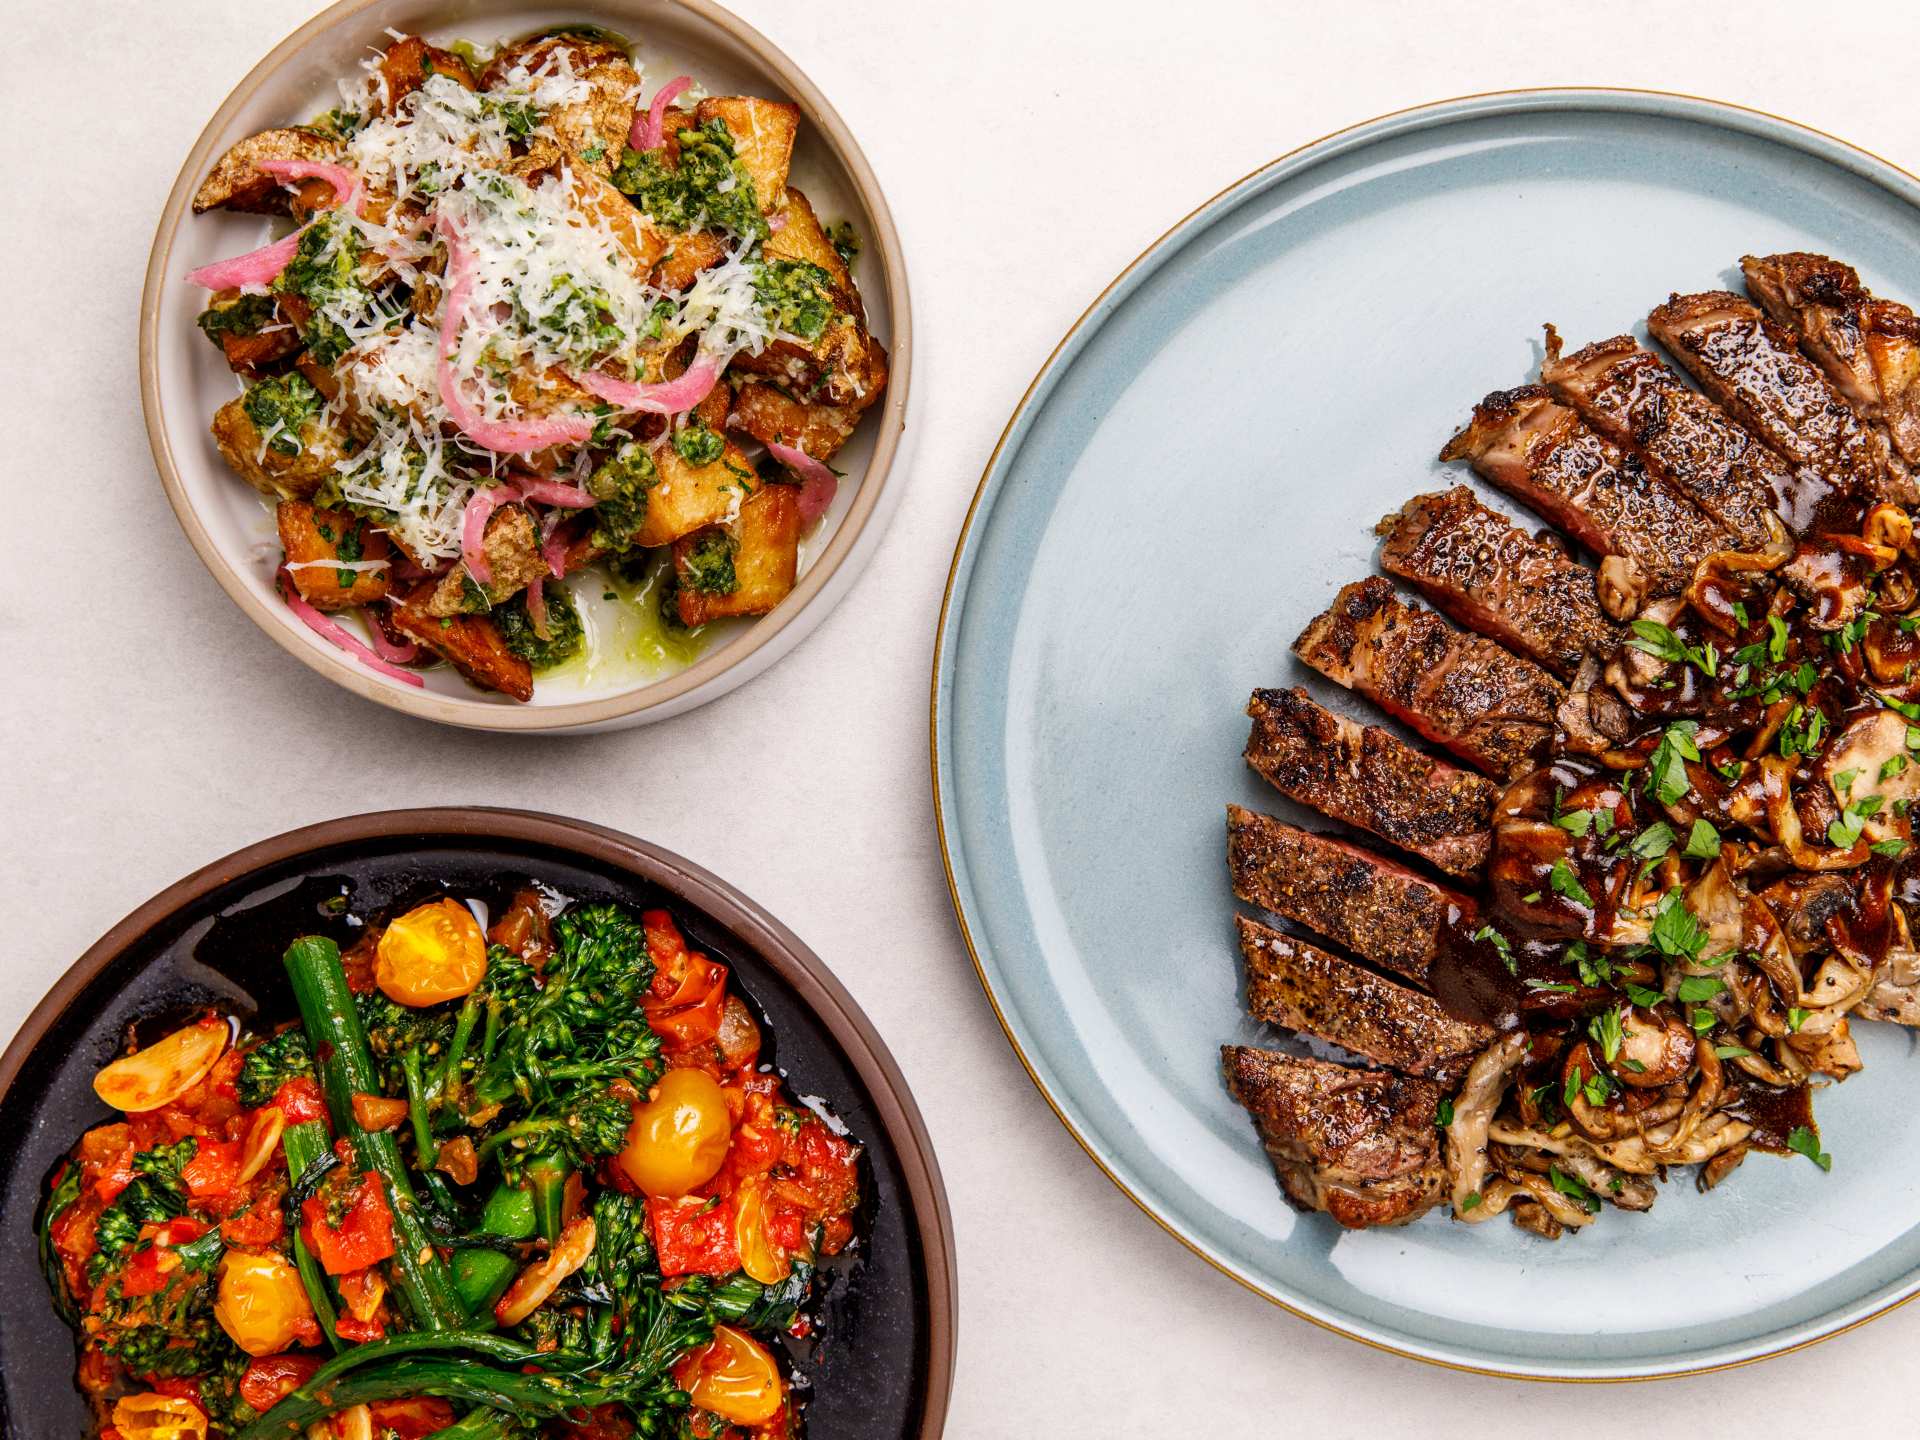 Best new restaurants Toronto | Steak tagliata and mushroom at Edna + Vita